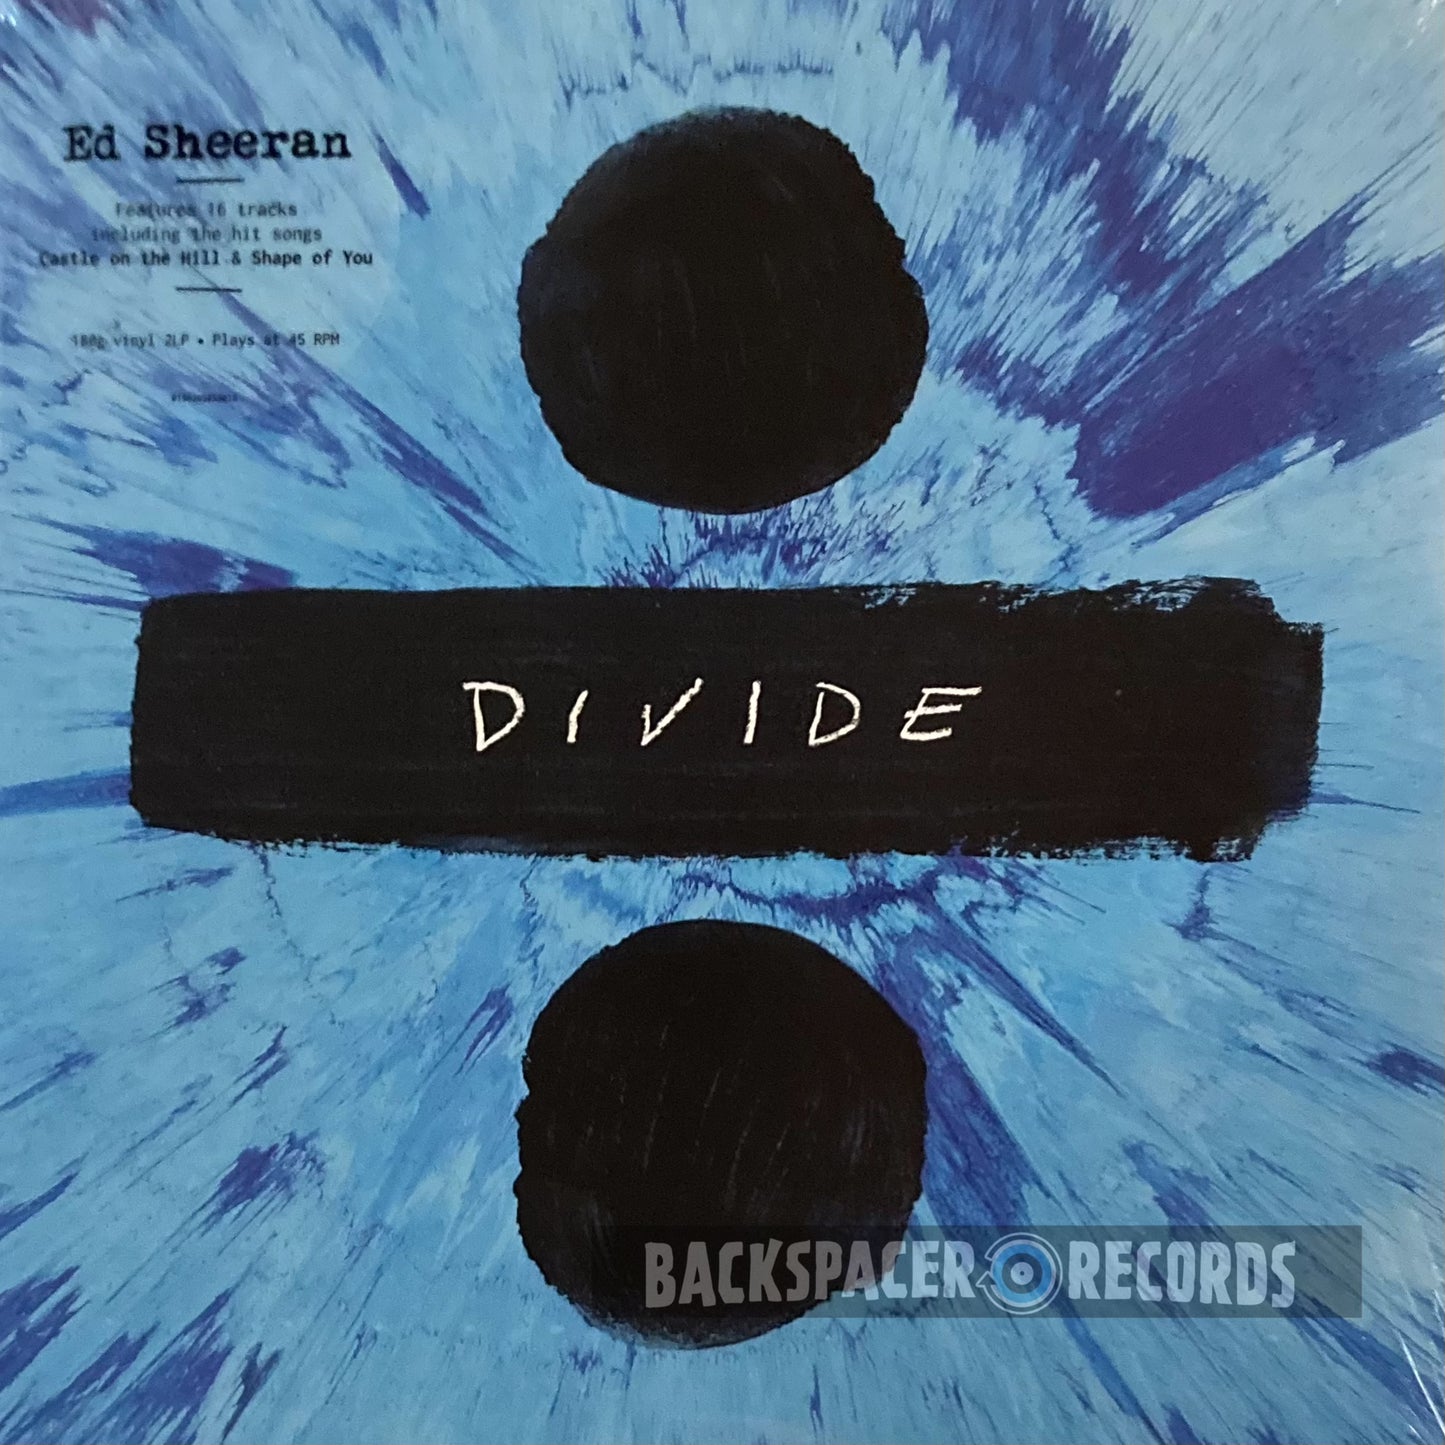 Ed Sheeran - Divide 2-LP (Sealed)